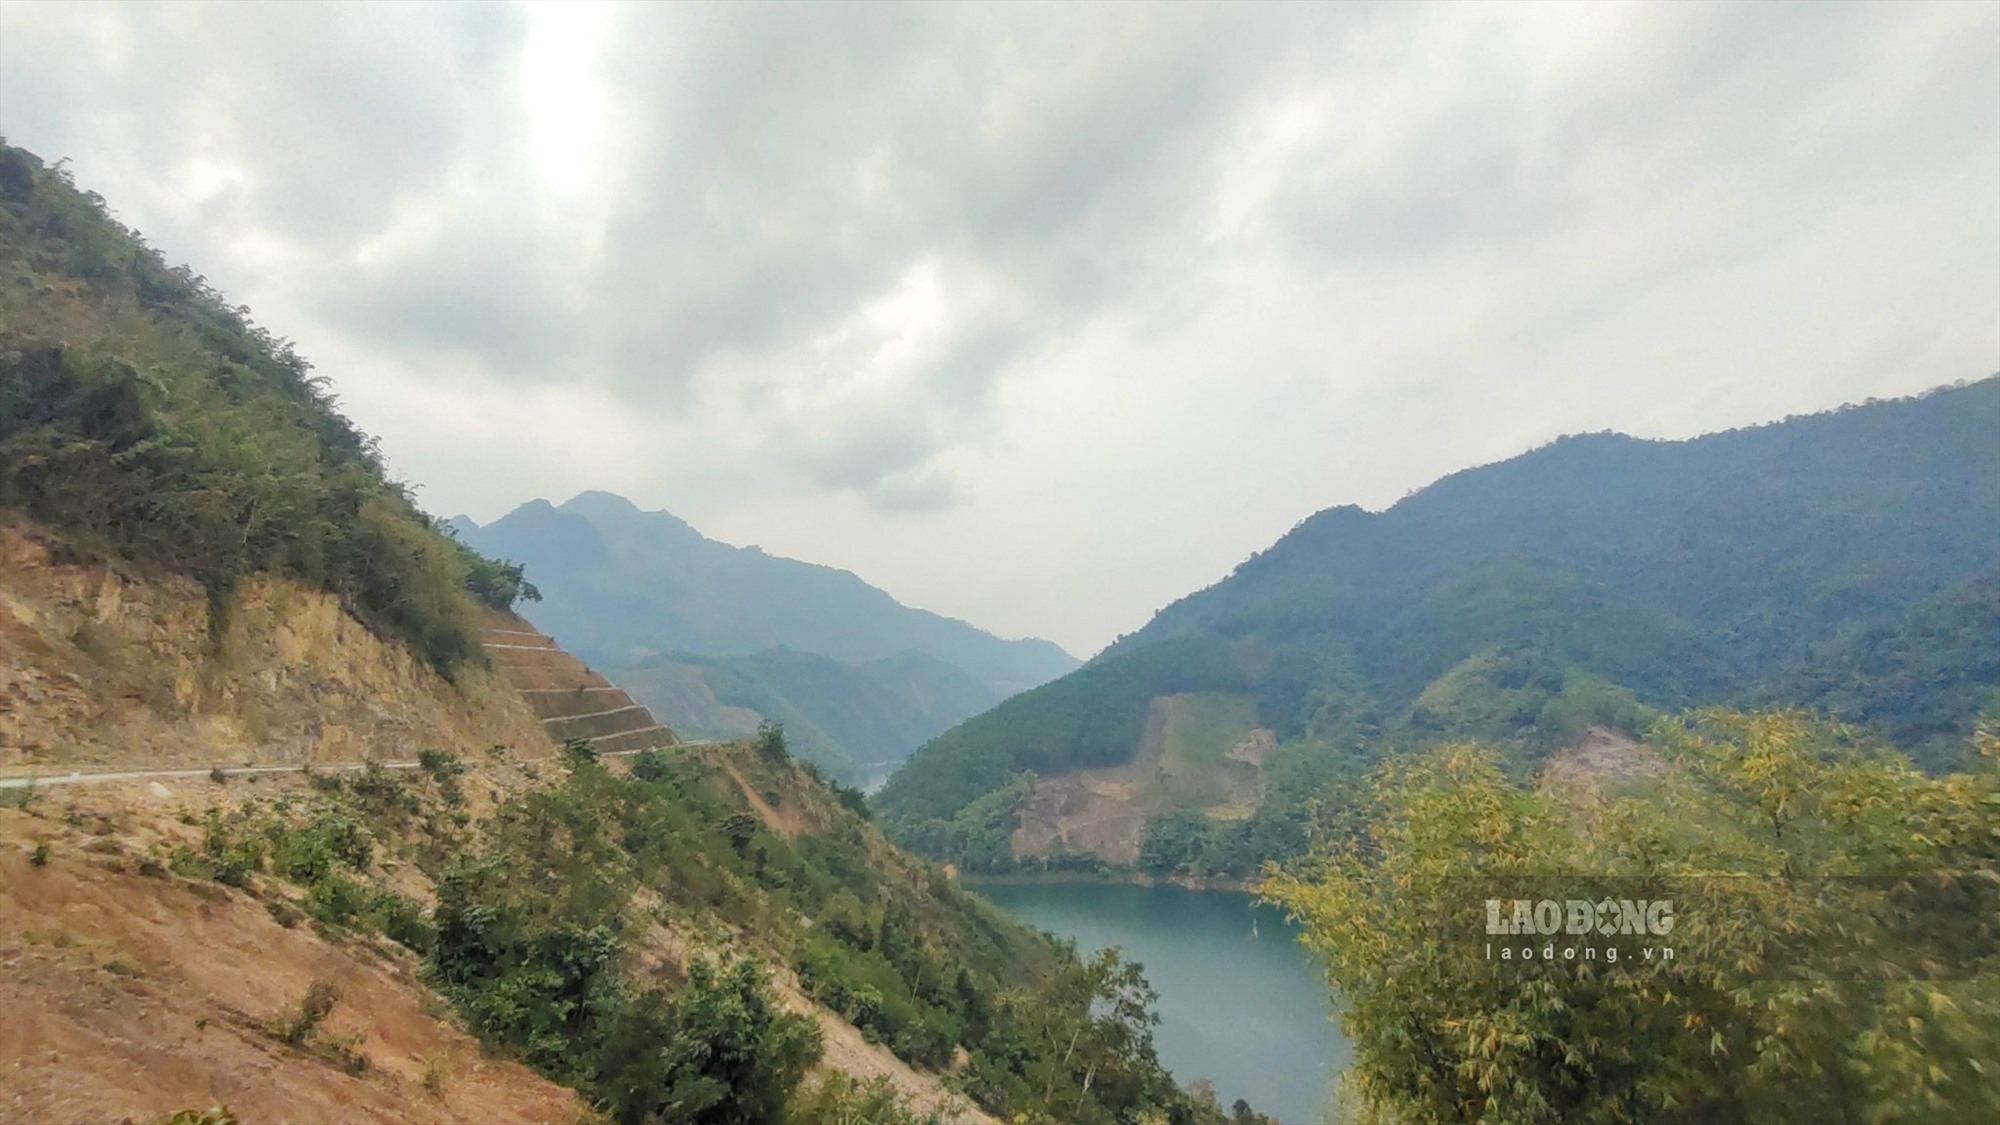 Là địa phương thuộc vùng cao của tỉnh Hòa Bình, huyện Đà Bắc có địa hình núi non hiểm trở, dân cư sinh sống thưa thớt, cùng với nhiều thôn xã bị chia cắt bới hồ Hòa Bình. 